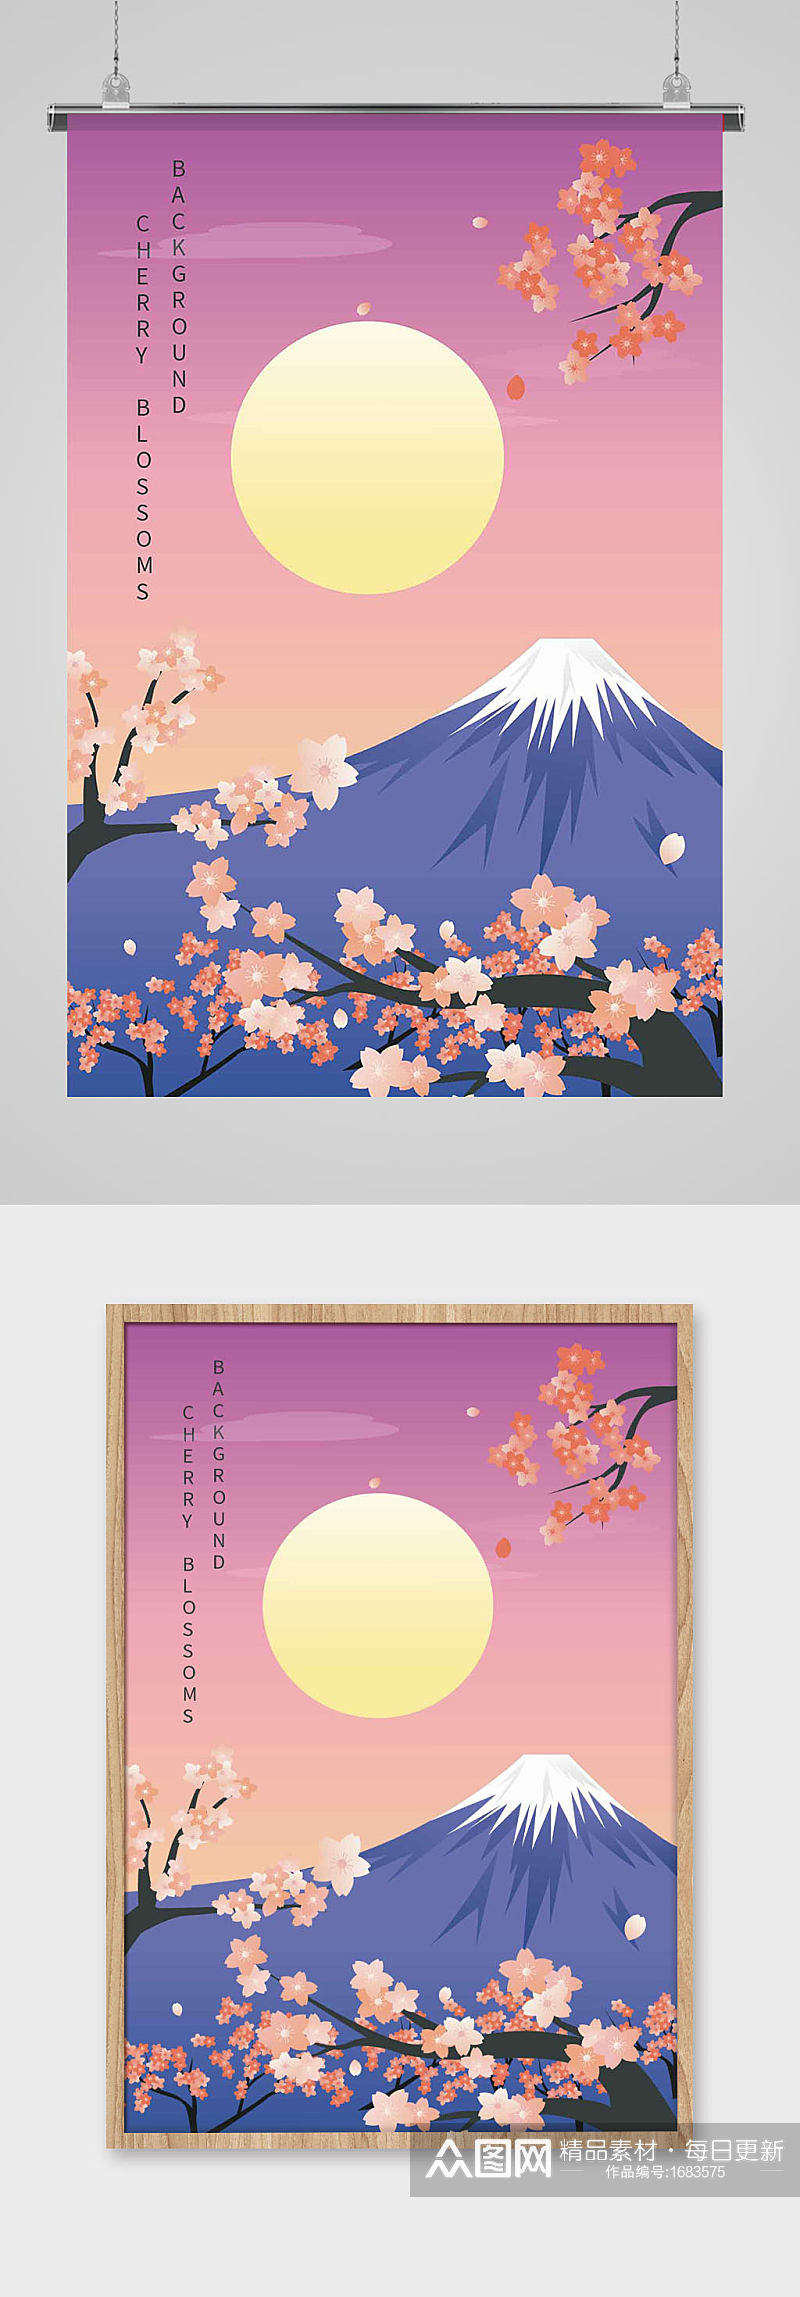 日本富士山樱花端午月色月亮天空海报素材